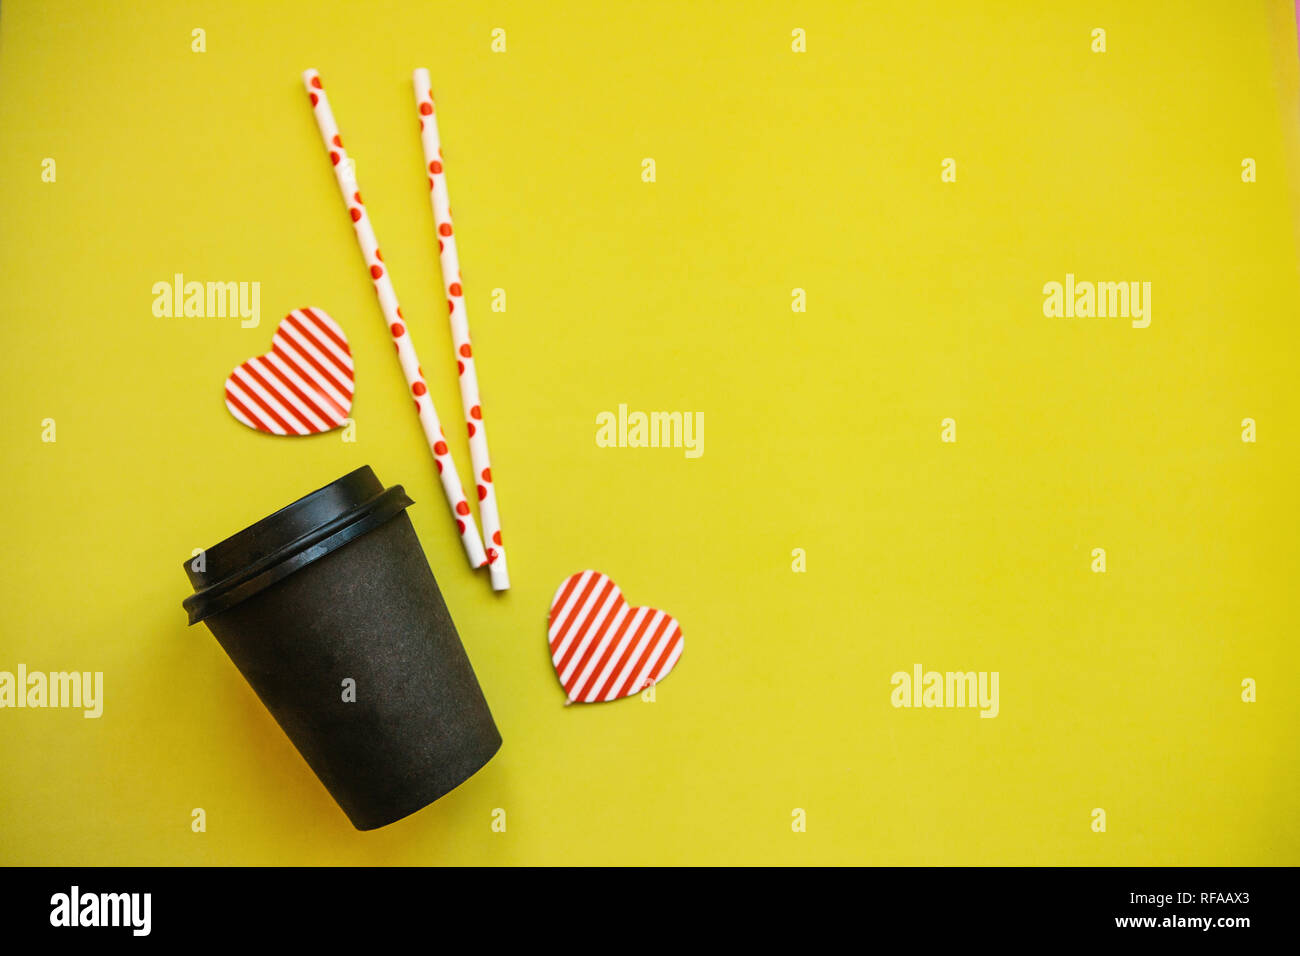 La tazza con il caffè, tubuli e cuori decorativi su uno sfondo giallo. Vicino a place per il testo. Foto Stock